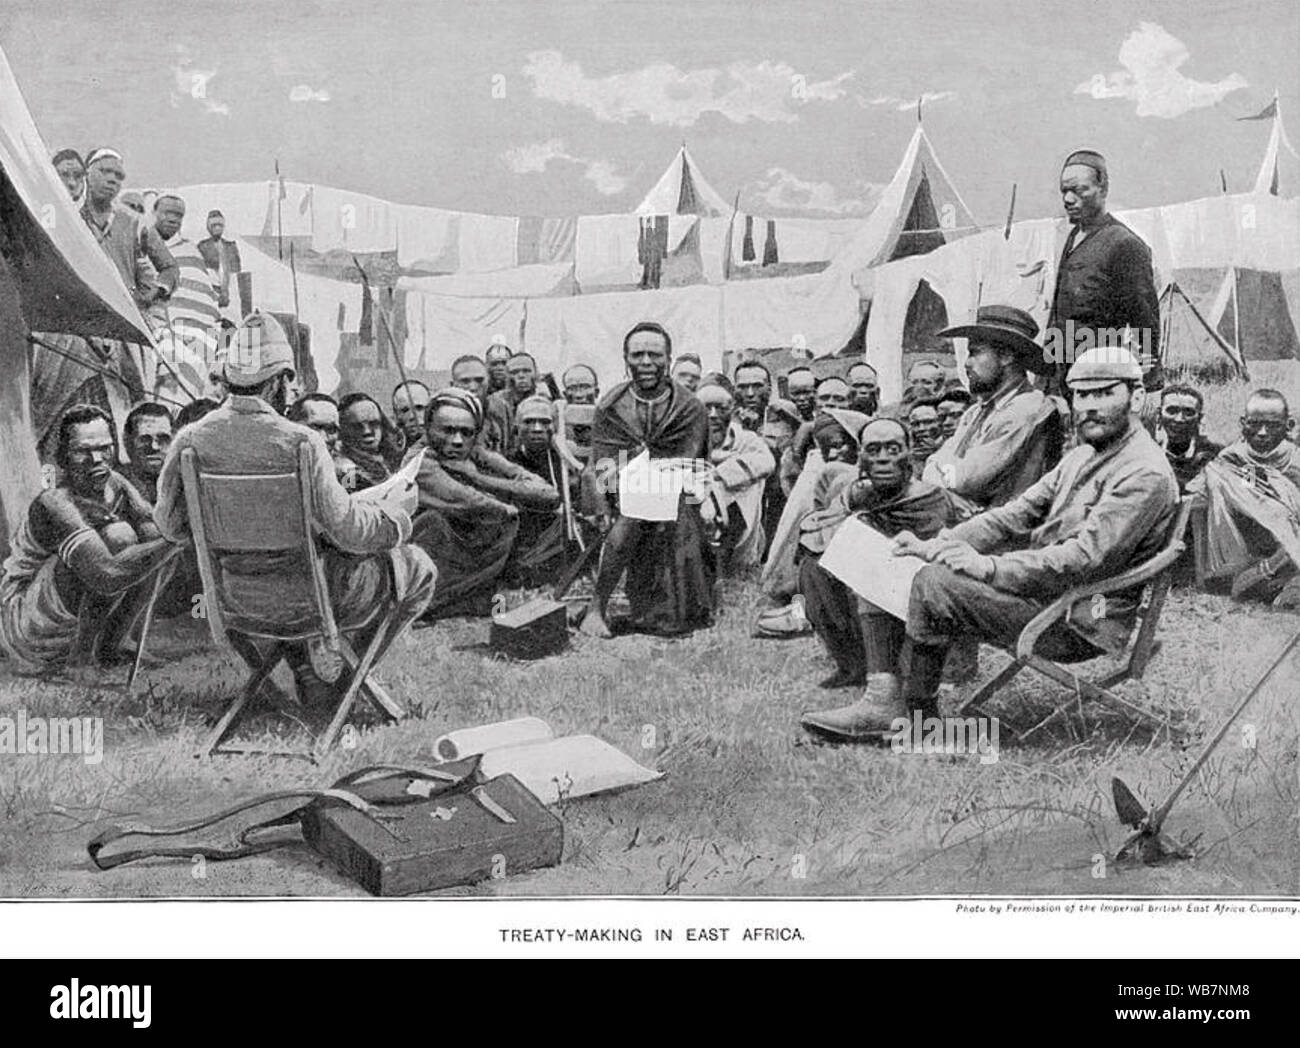 El África oriental británica Imperial compañía titulado "Tratado de decisiones en África Oriental", publicado por la empresa muestran los germanos visitar un campamento Britsh Foto de stock